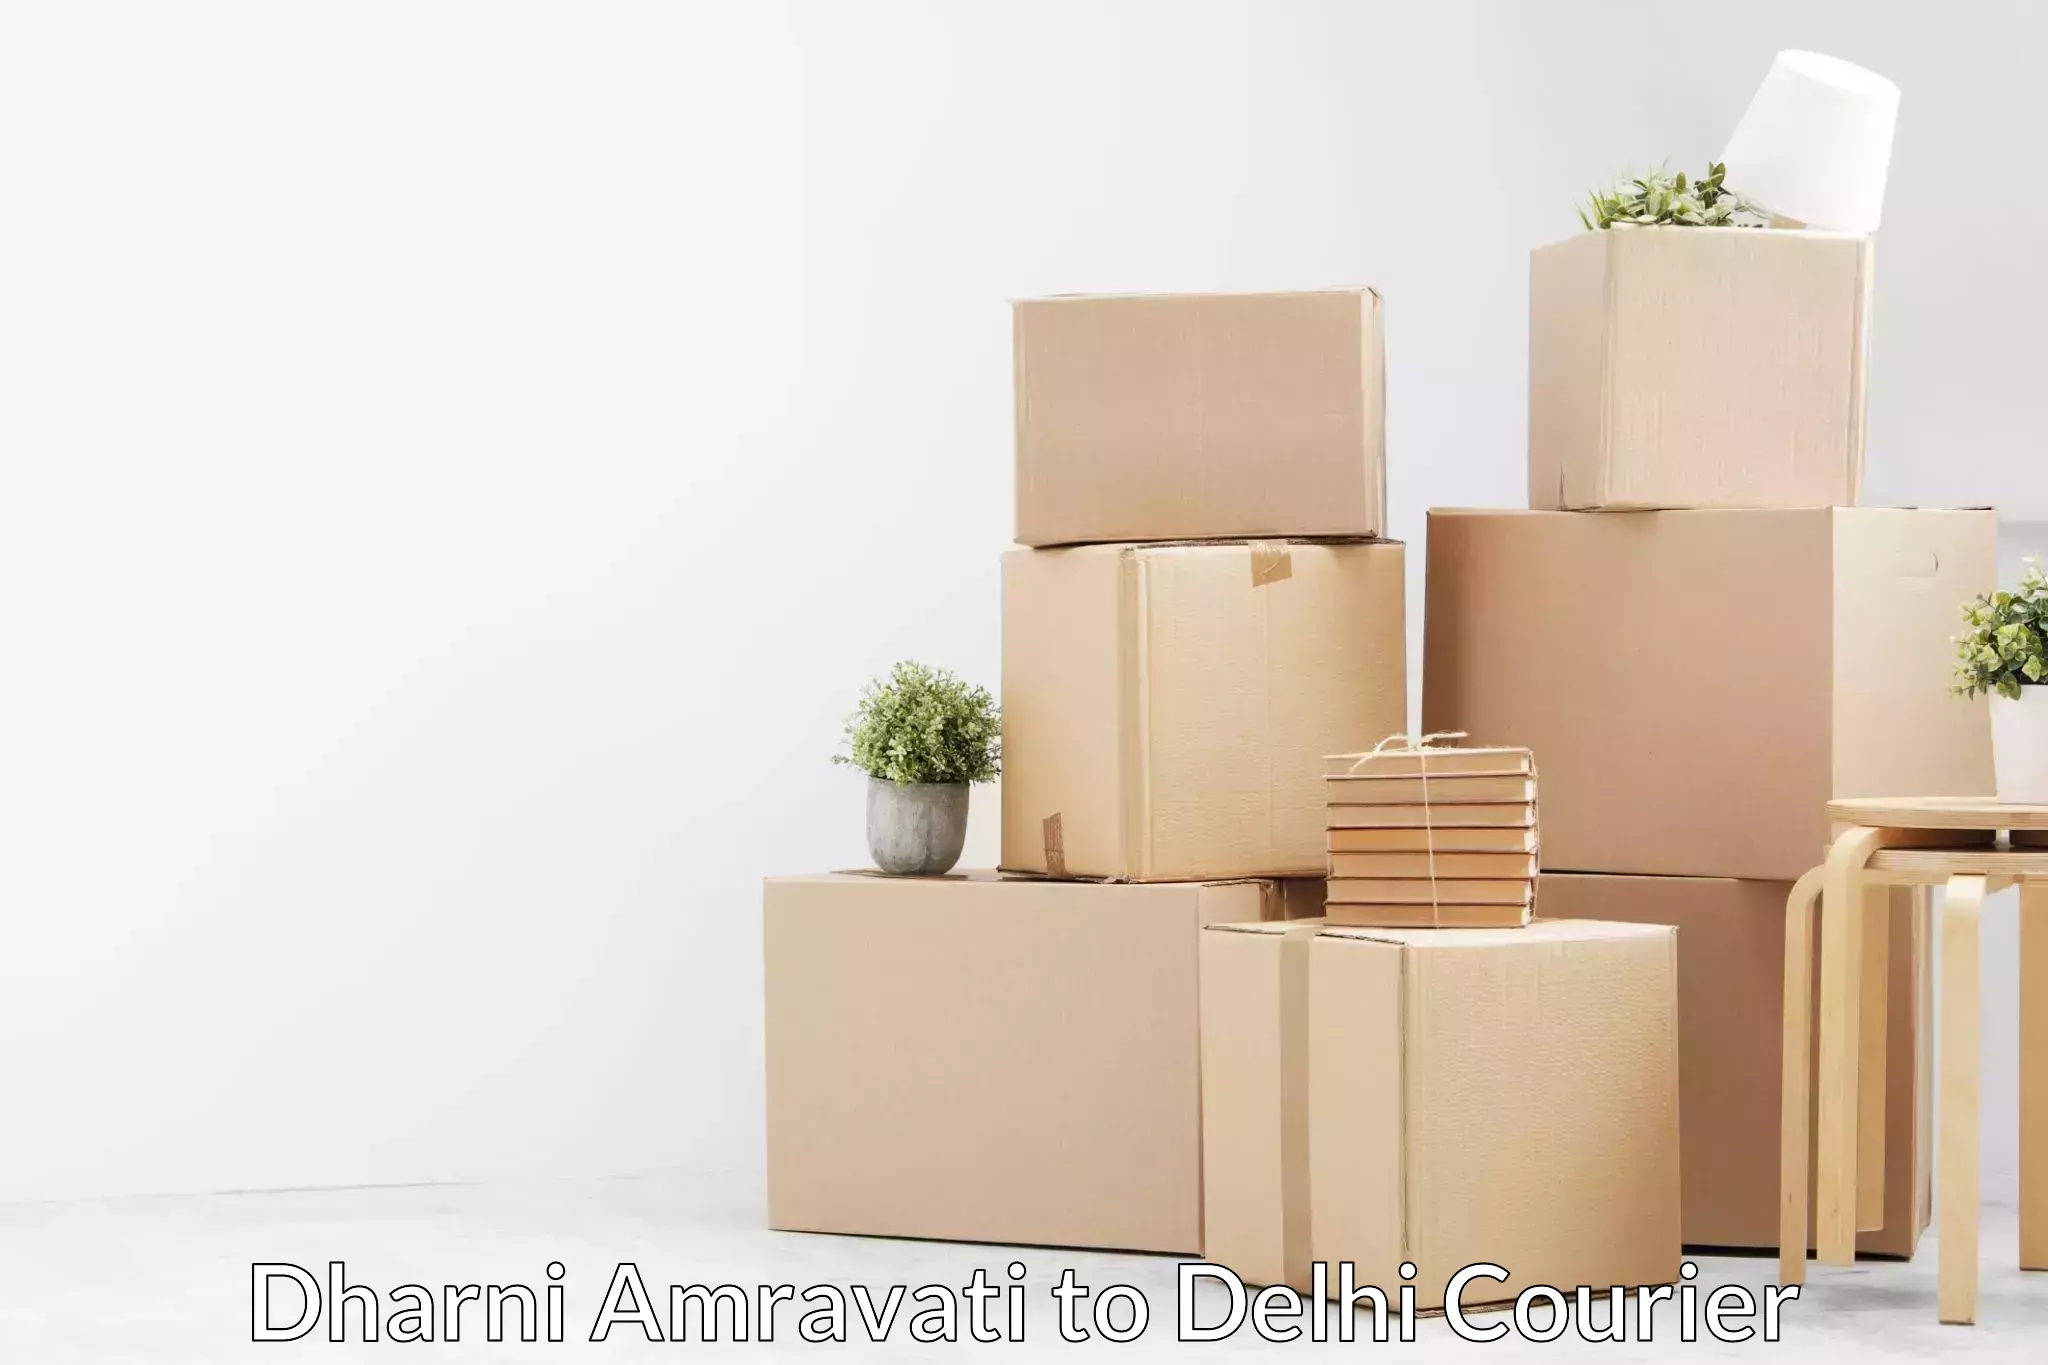 Home moving experts Dharni Amravati to University of Delhi